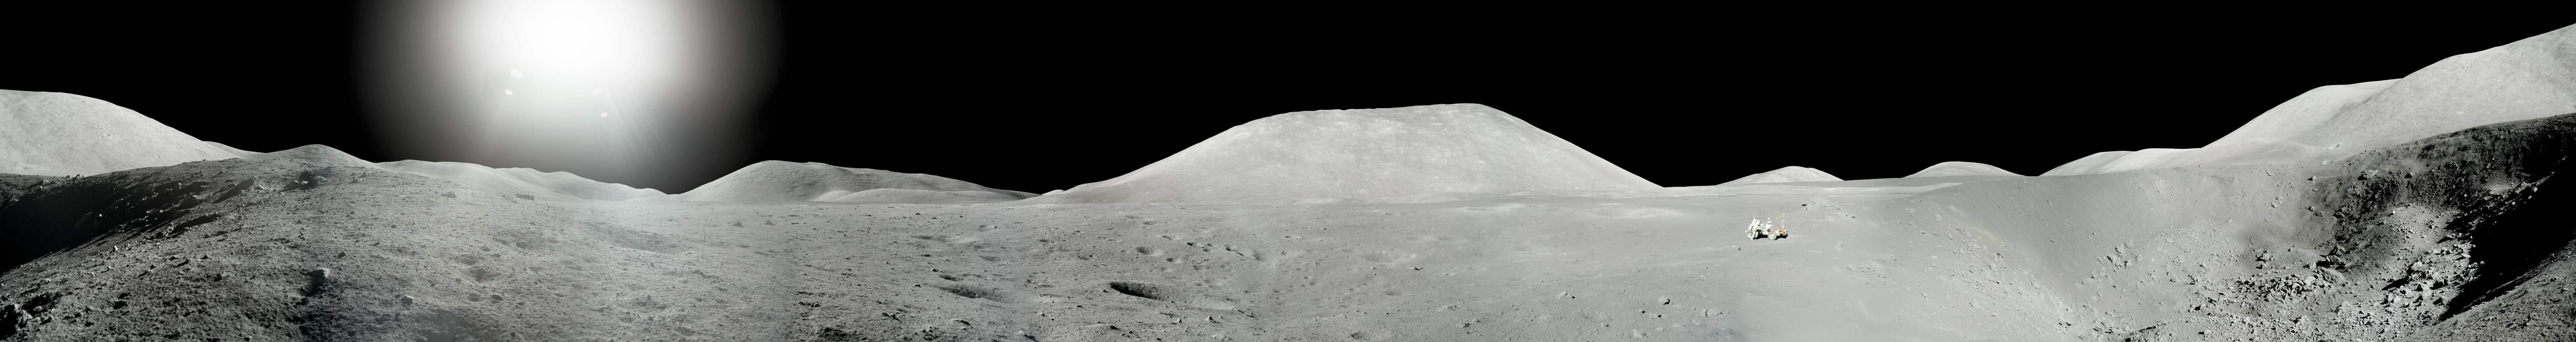 Жнец дрейфующей луны 85. Аполлон 17 панорама. Панорамные снимки Луны Аполлон. Пик Агнесс гора на Луне. Издание которое опубликовали панорамные изображения Луны.